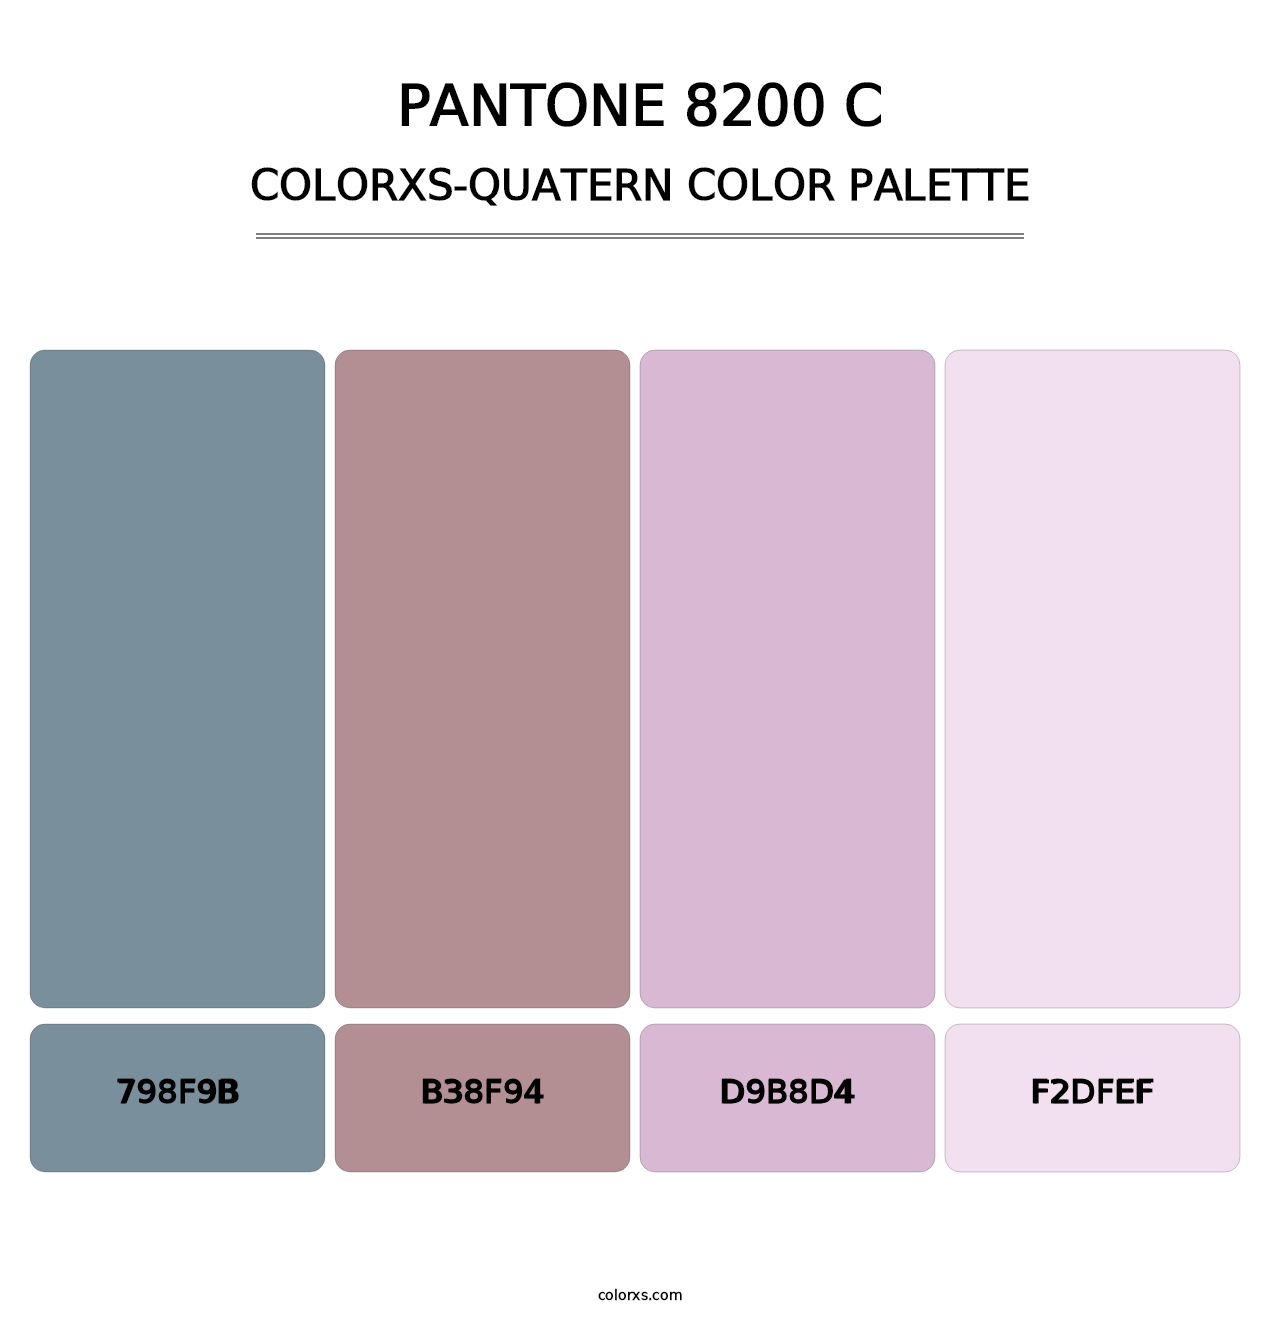 PANTONE 8200 C - Colorxs Quatern Palette